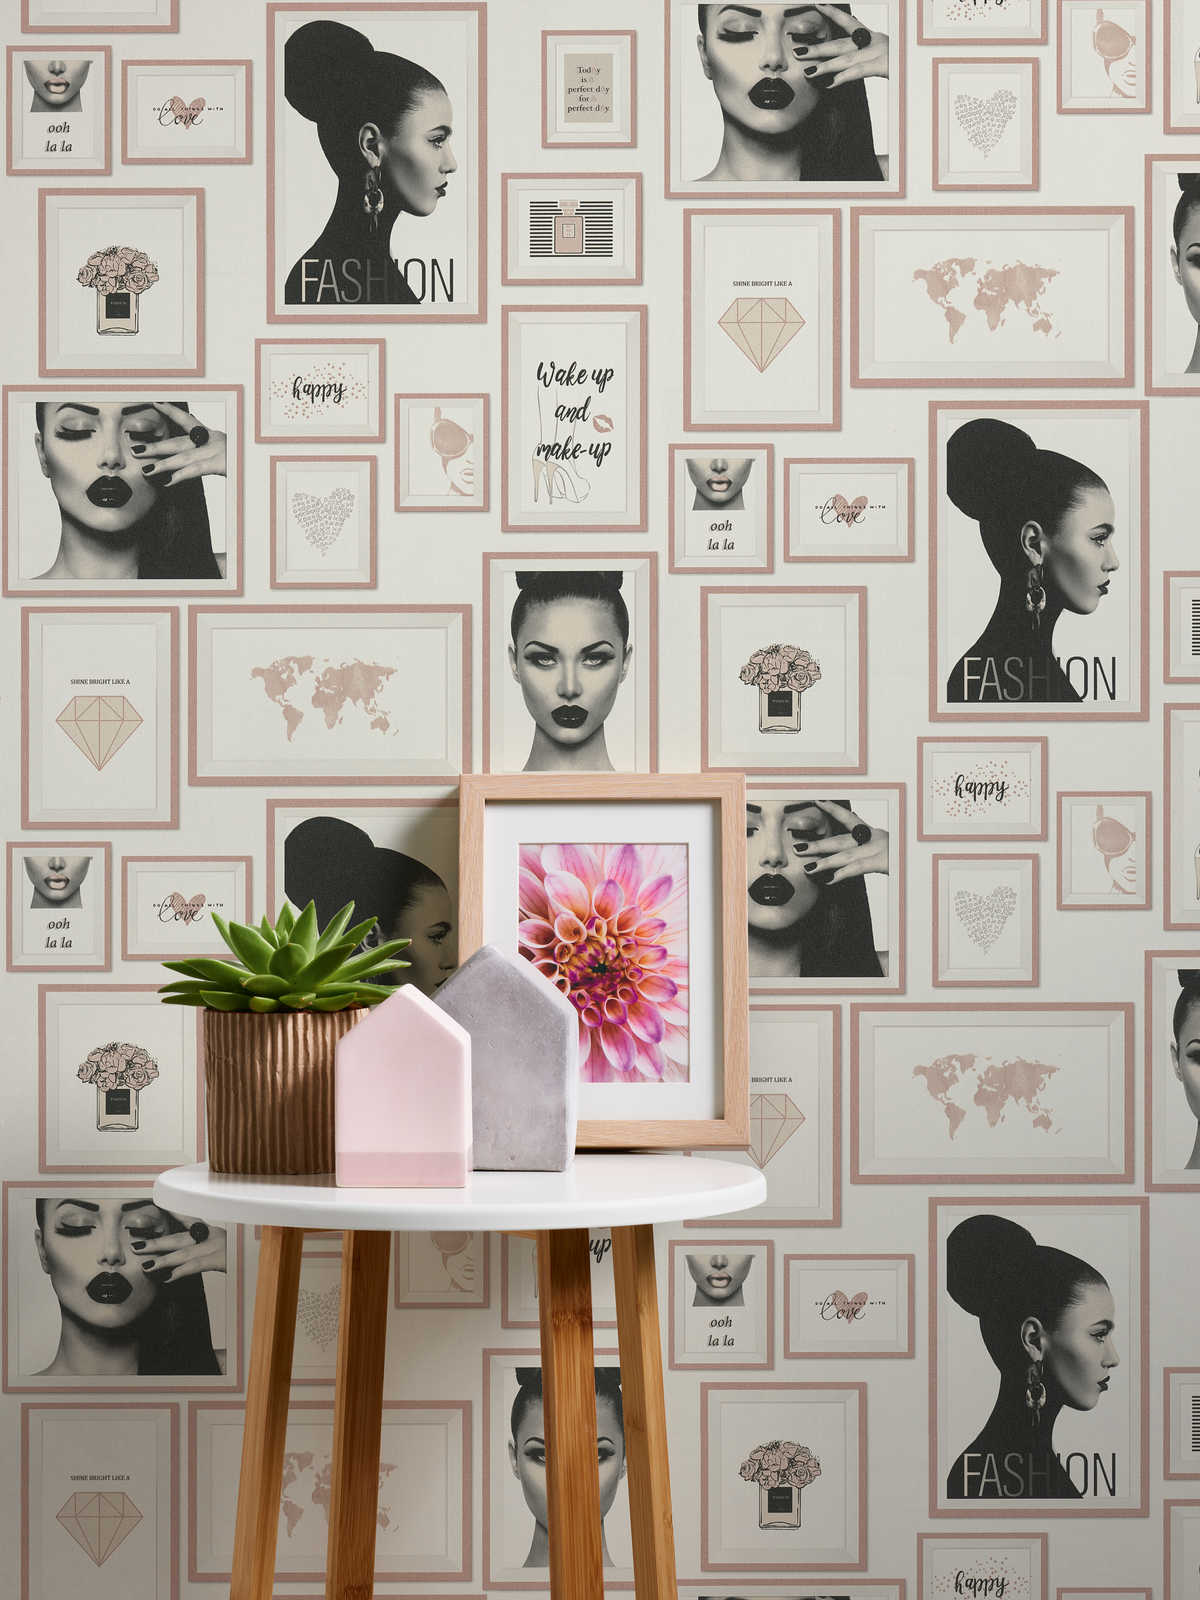             Papier peint Fashion Design avec décorations murales - rose, noir, blanc
        